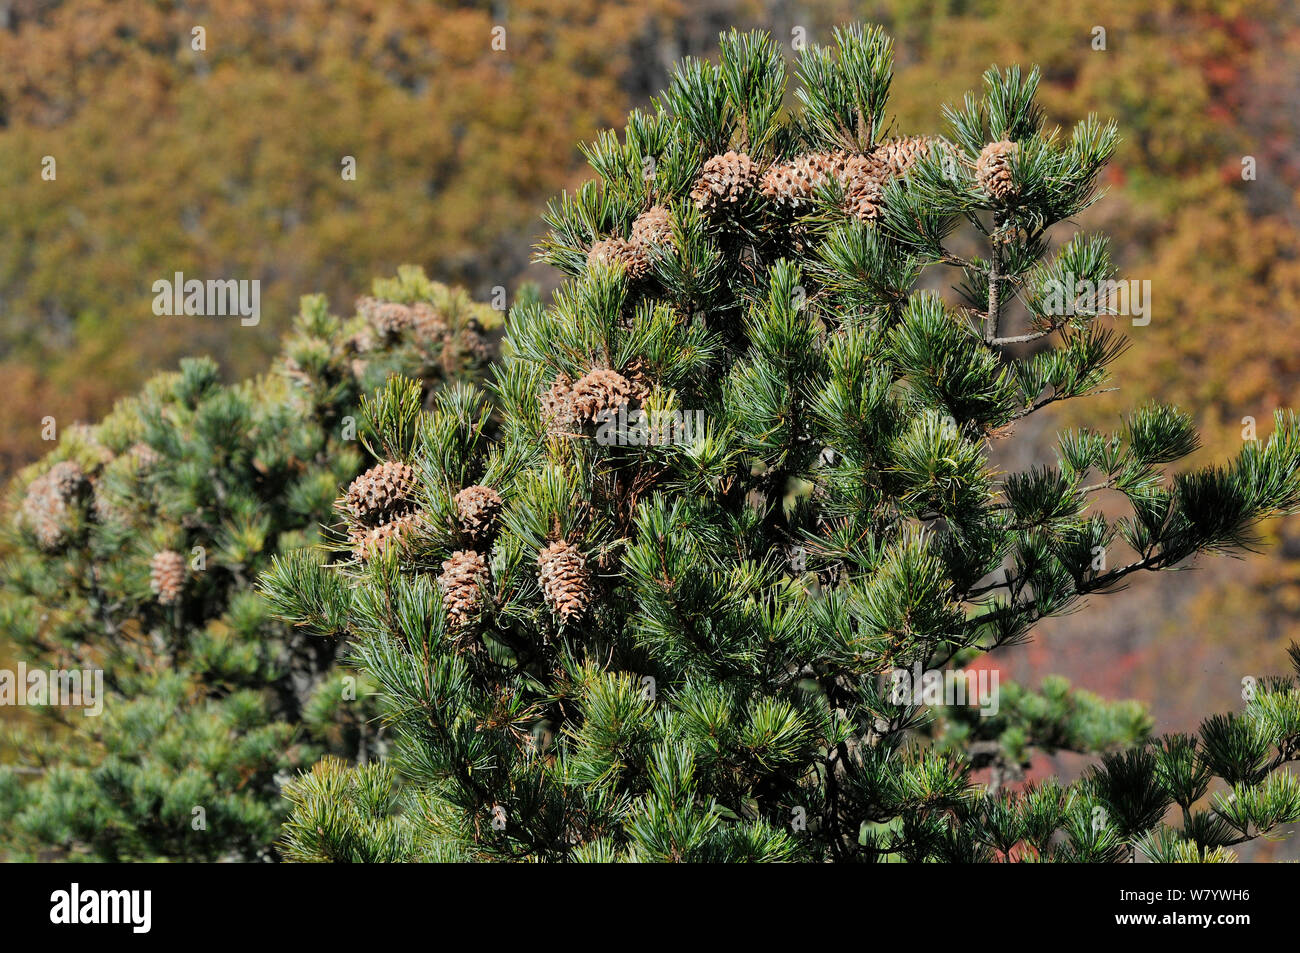 Korean pine (Pinus koraiensis)  tree with cones, Amur Region, Russia. Stock Photo